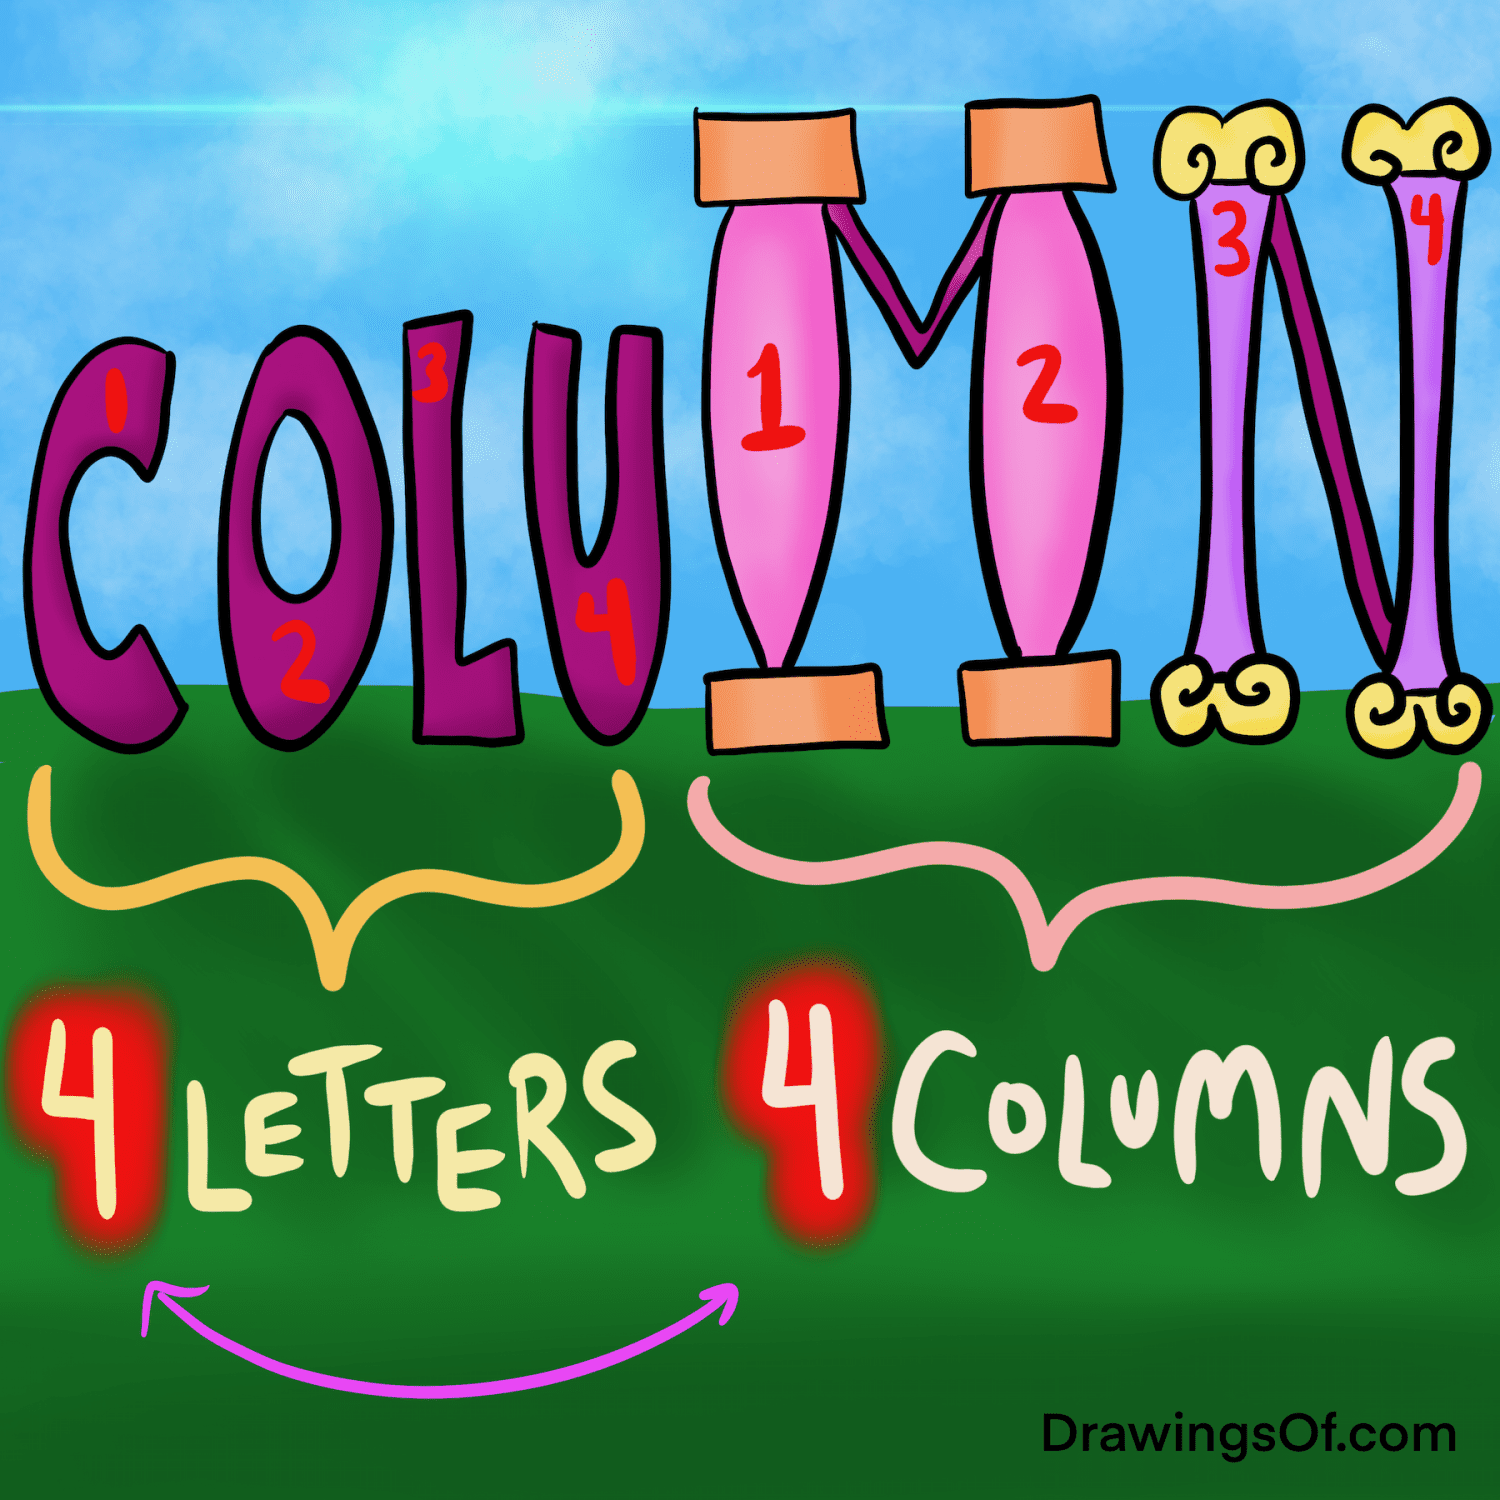 How do you spell column?